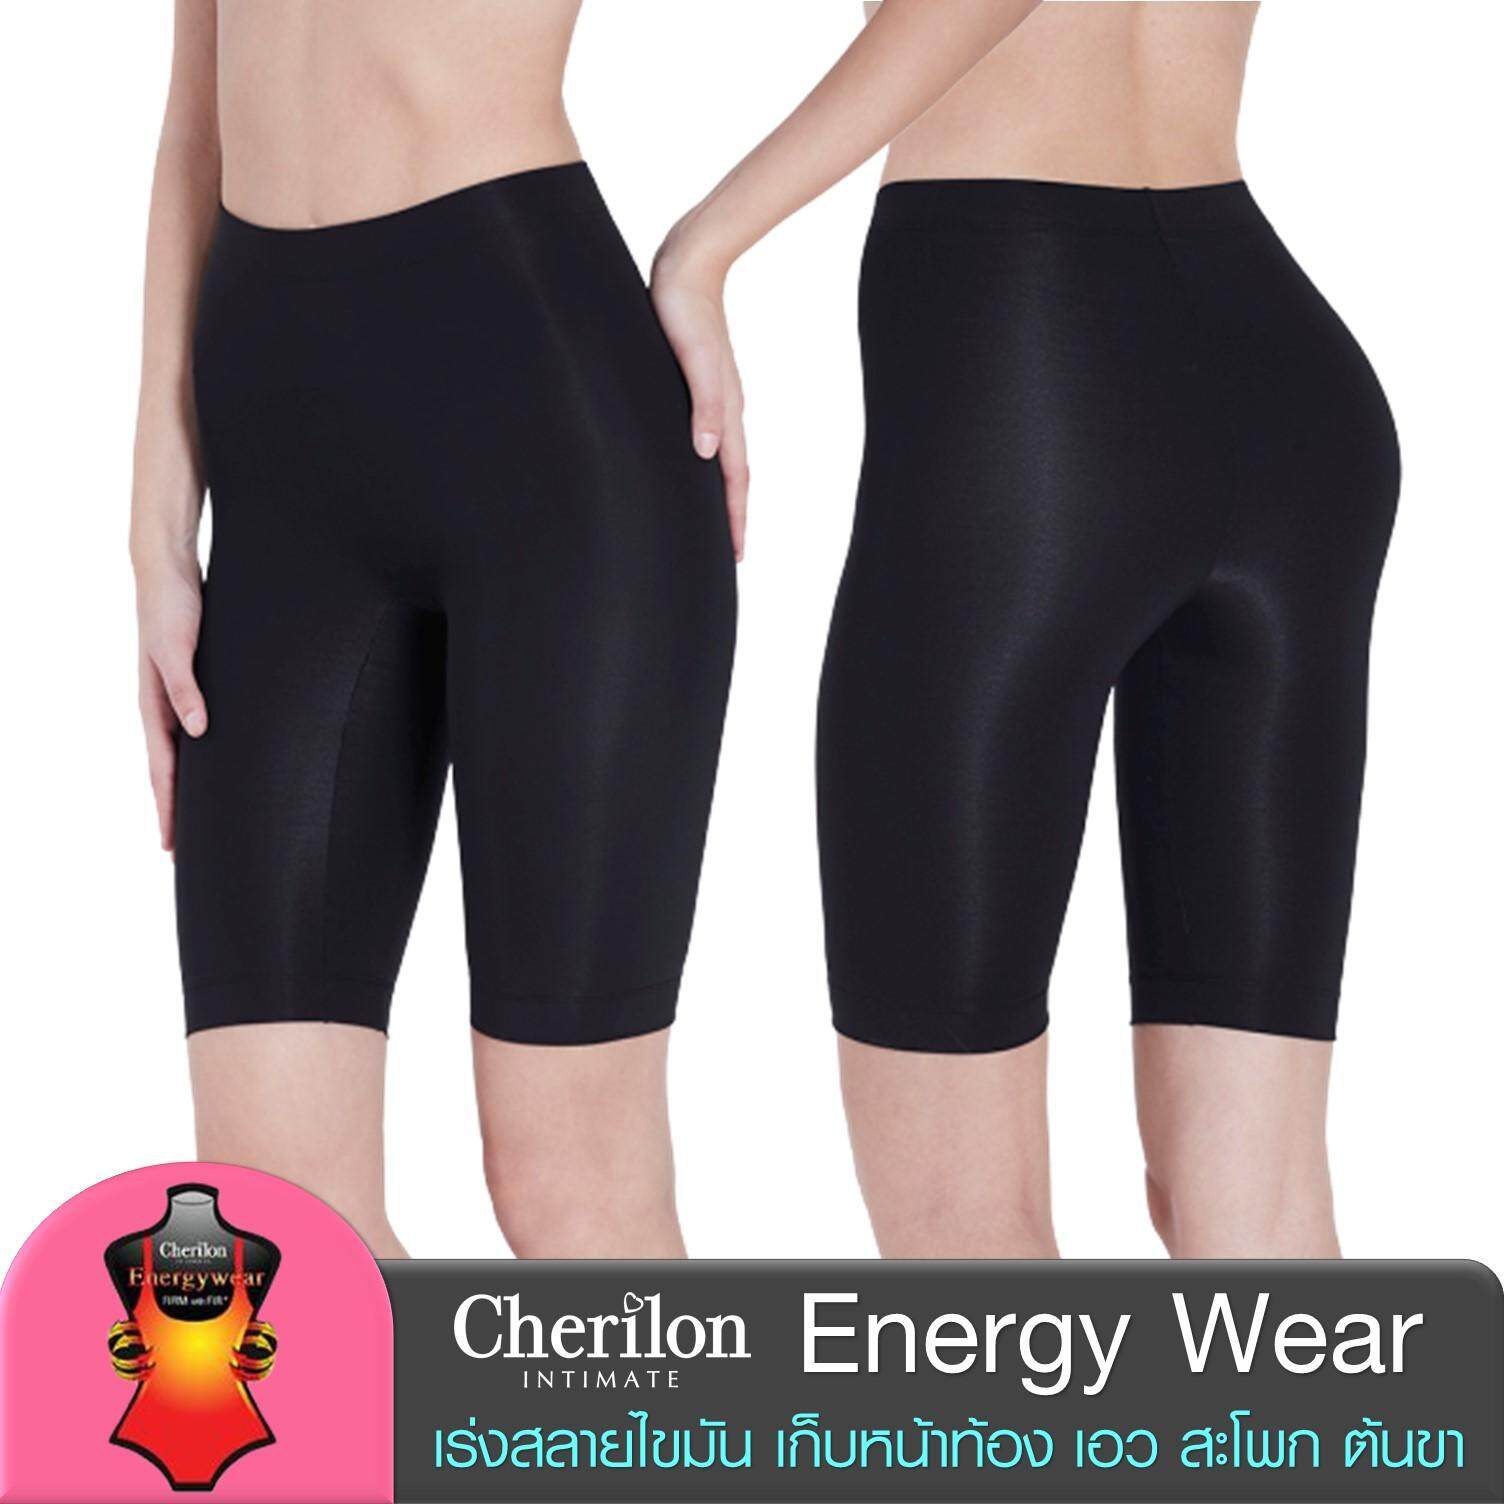 Cherilon Energy Wear กางเกงกระชับสัดส่วน หลัง ดูดไขมัน หลังคลอด ป้องกันเซลลูไลต์ เก็บหน้าท้อง ต้นขา 3 แบบ 2 สี NIC-SWEN